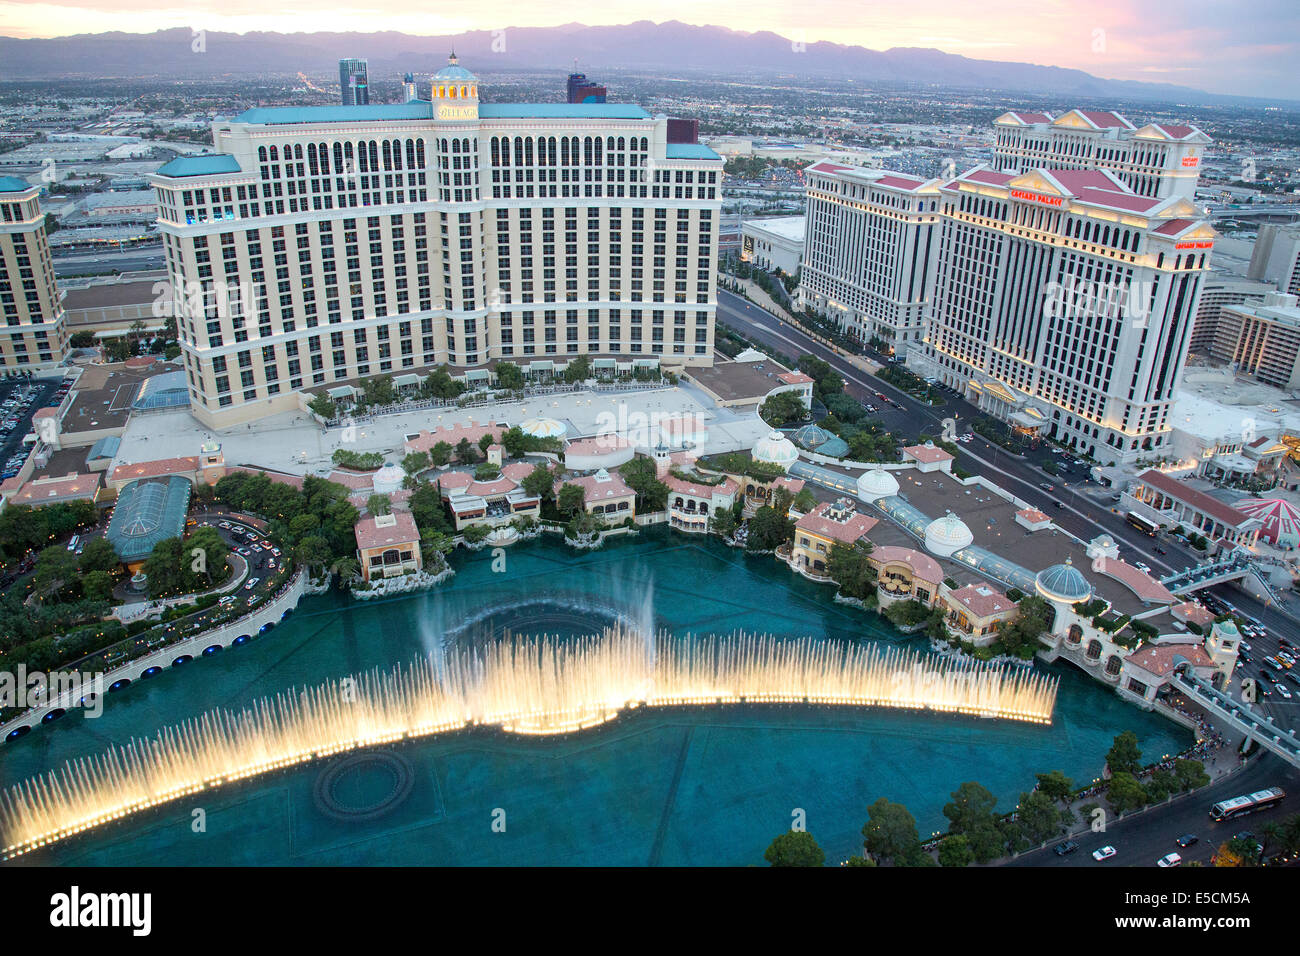 Le Bellagio luxury hotel, casino, et des fontaines sur le Strip de Las Vegas dans le Paradis, au Nevada. Banque D'Images